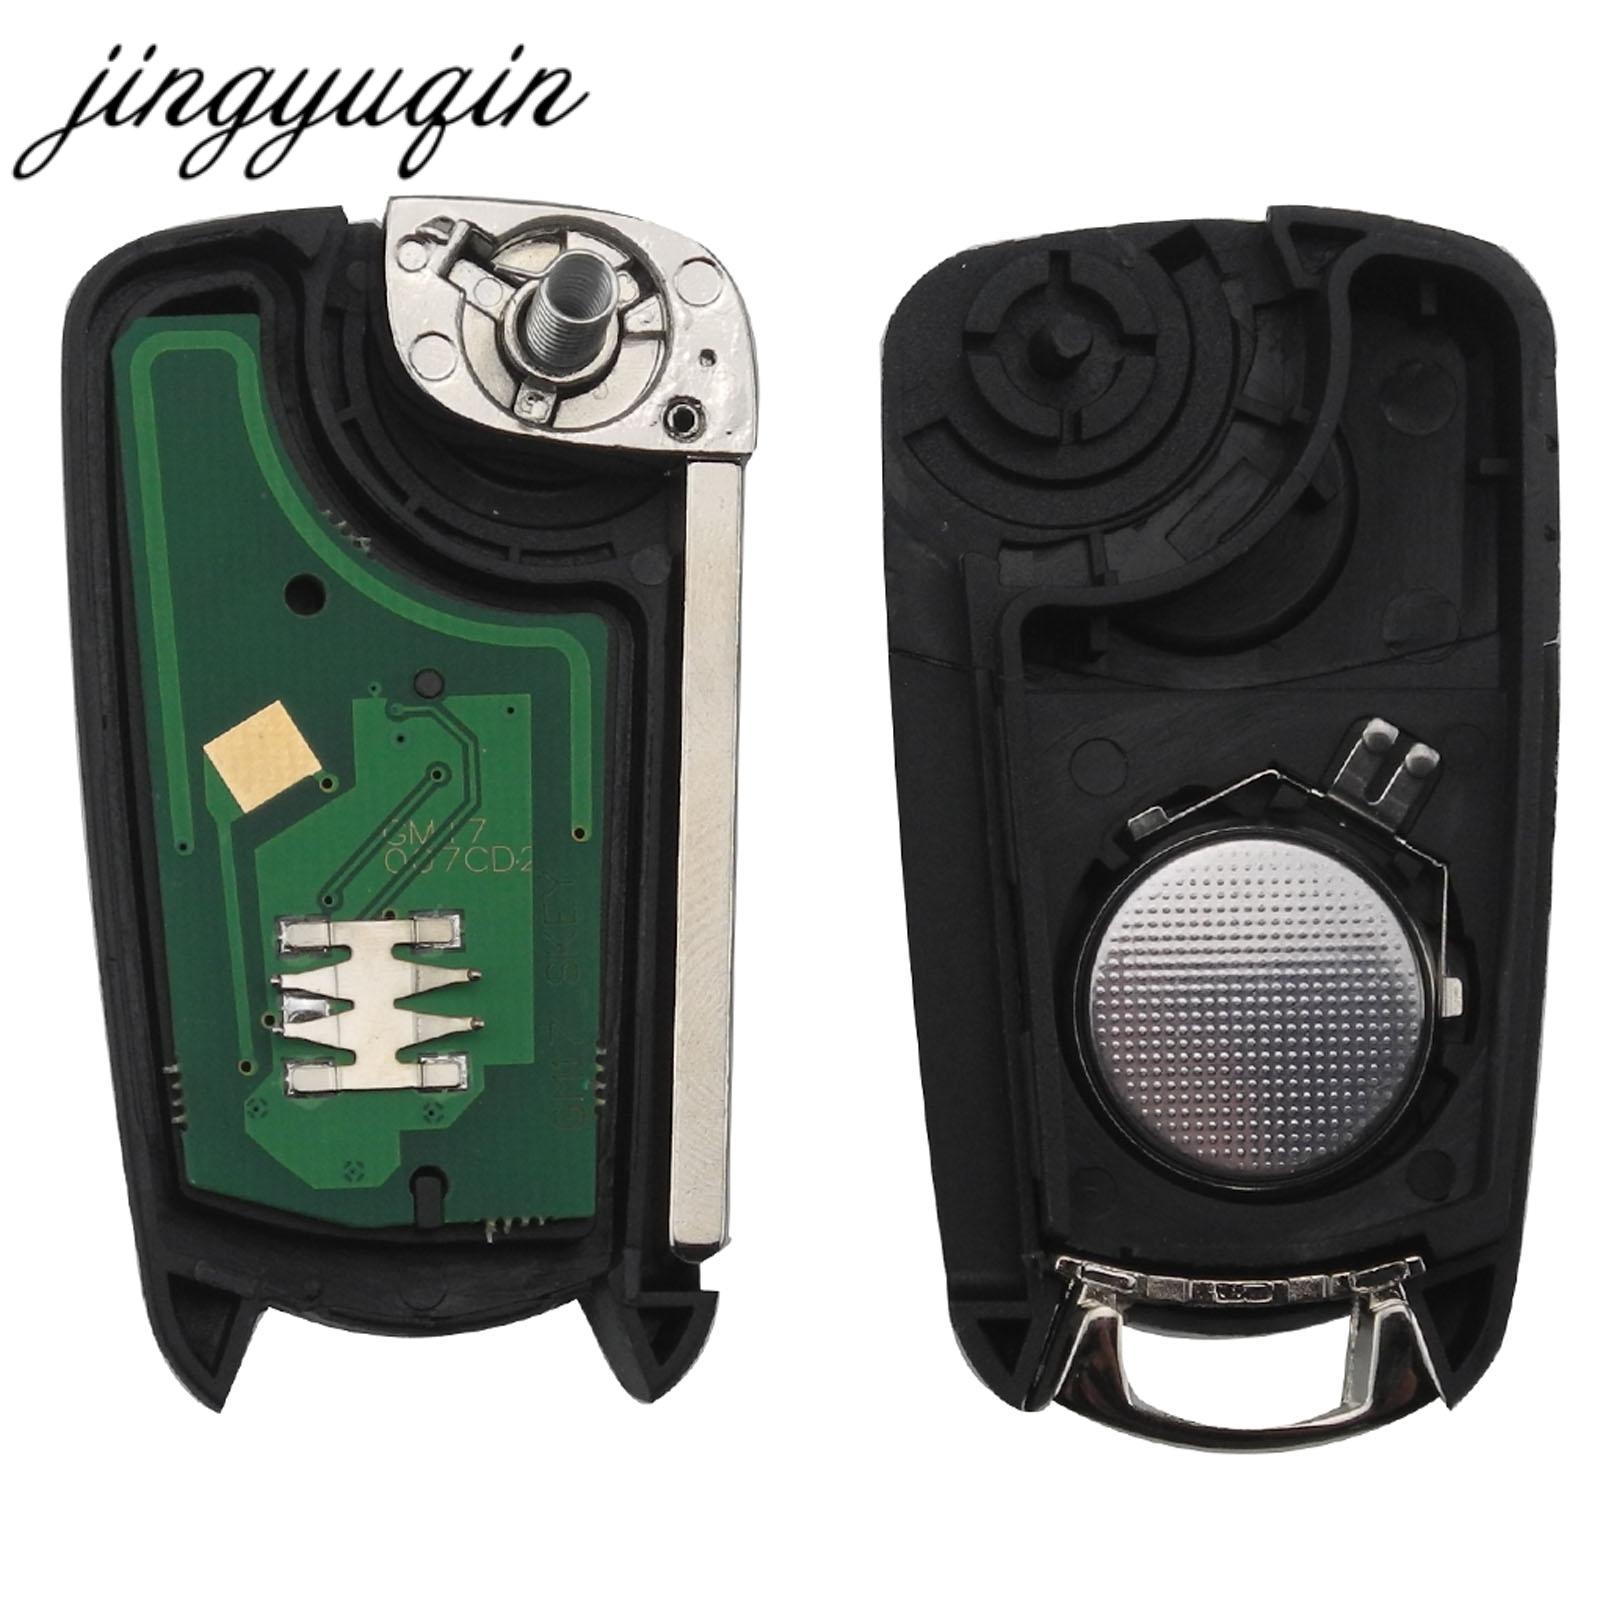 Изображение товара: Jingyuqin дистанционный Раскладной Автомобильный ключ 434 МГц чехол для Fob чехол для стайлинга чехол 3 кнопки для Vauxhall Opel Corsa Astra Vectra Signum